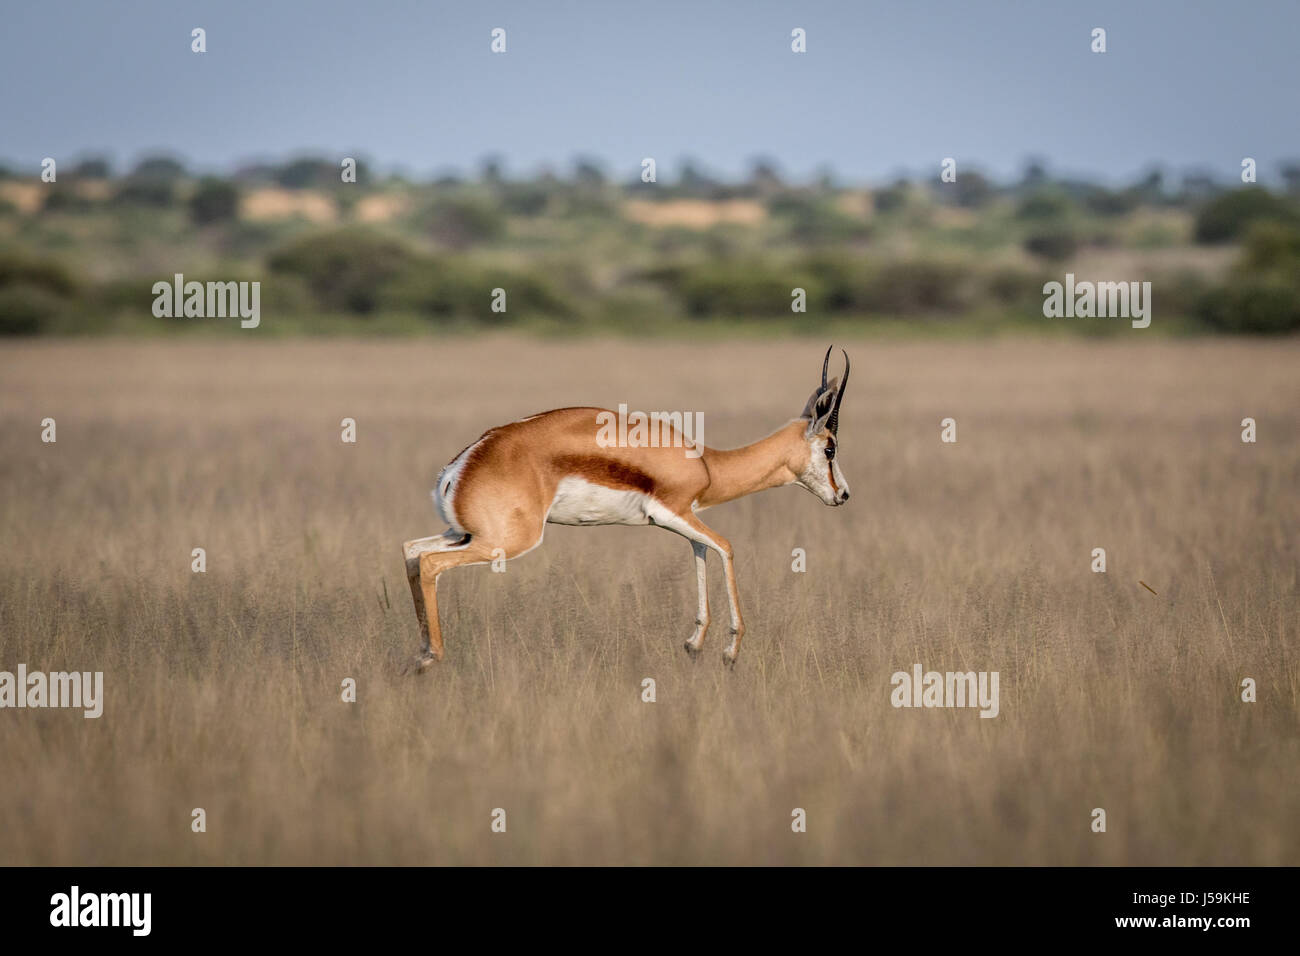 Springbok pronking in the Central Kalahari Game Reserve, Botswana. Stock Photo